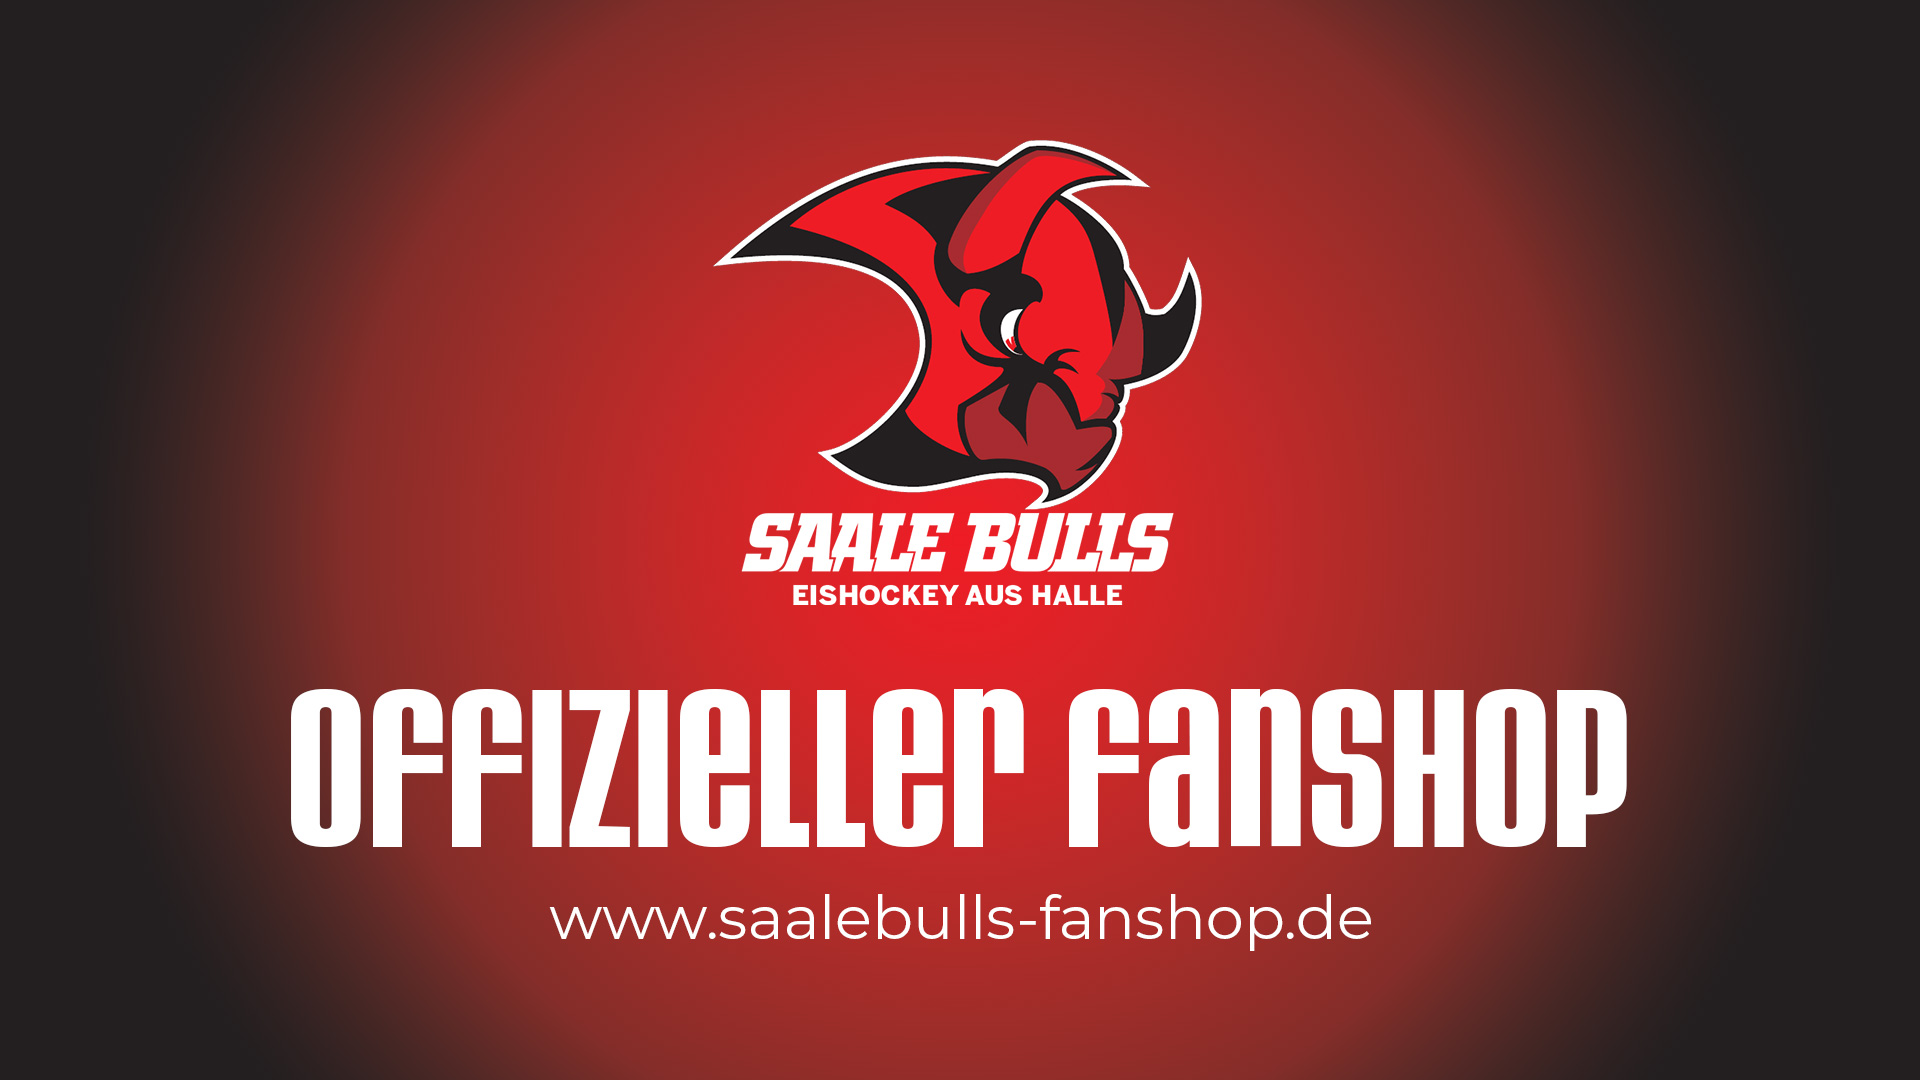 (c) Saalebulls-fanshop.de